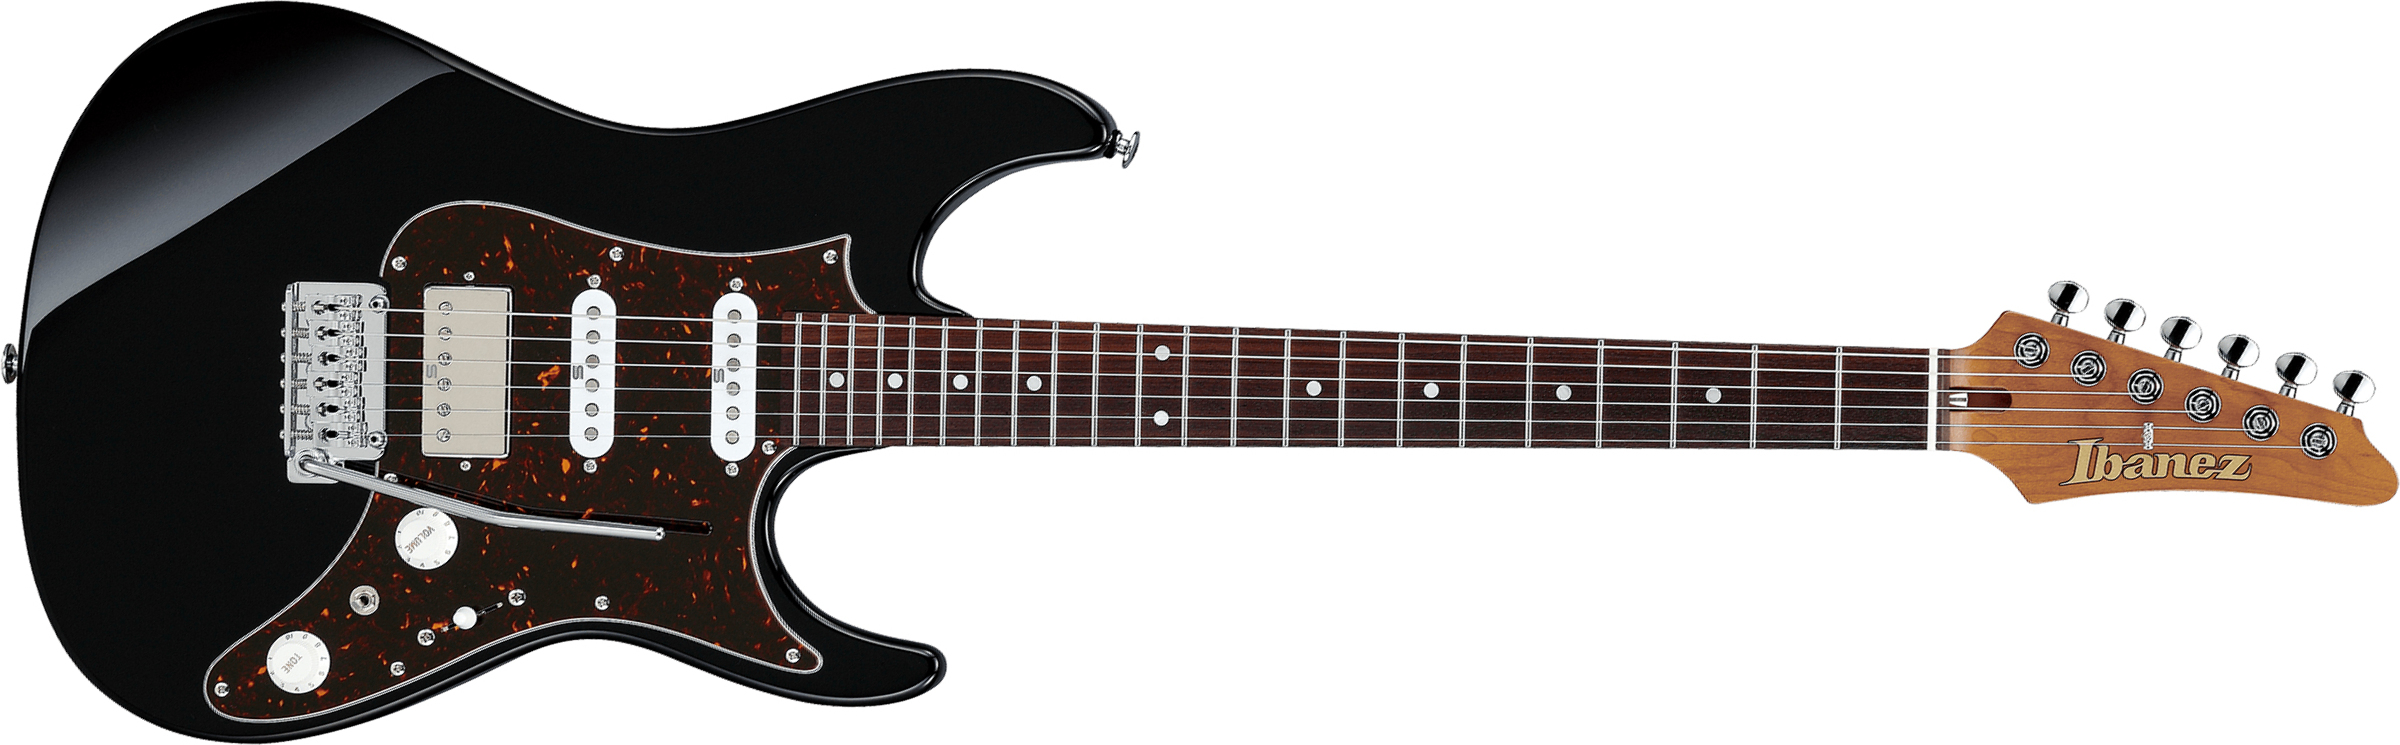 Ibanez Az2204n Bk Prestige Jap Hss Seymour Duncan Trem Rw - Black - Guitarra eléctrica con forma de str. - Main picture